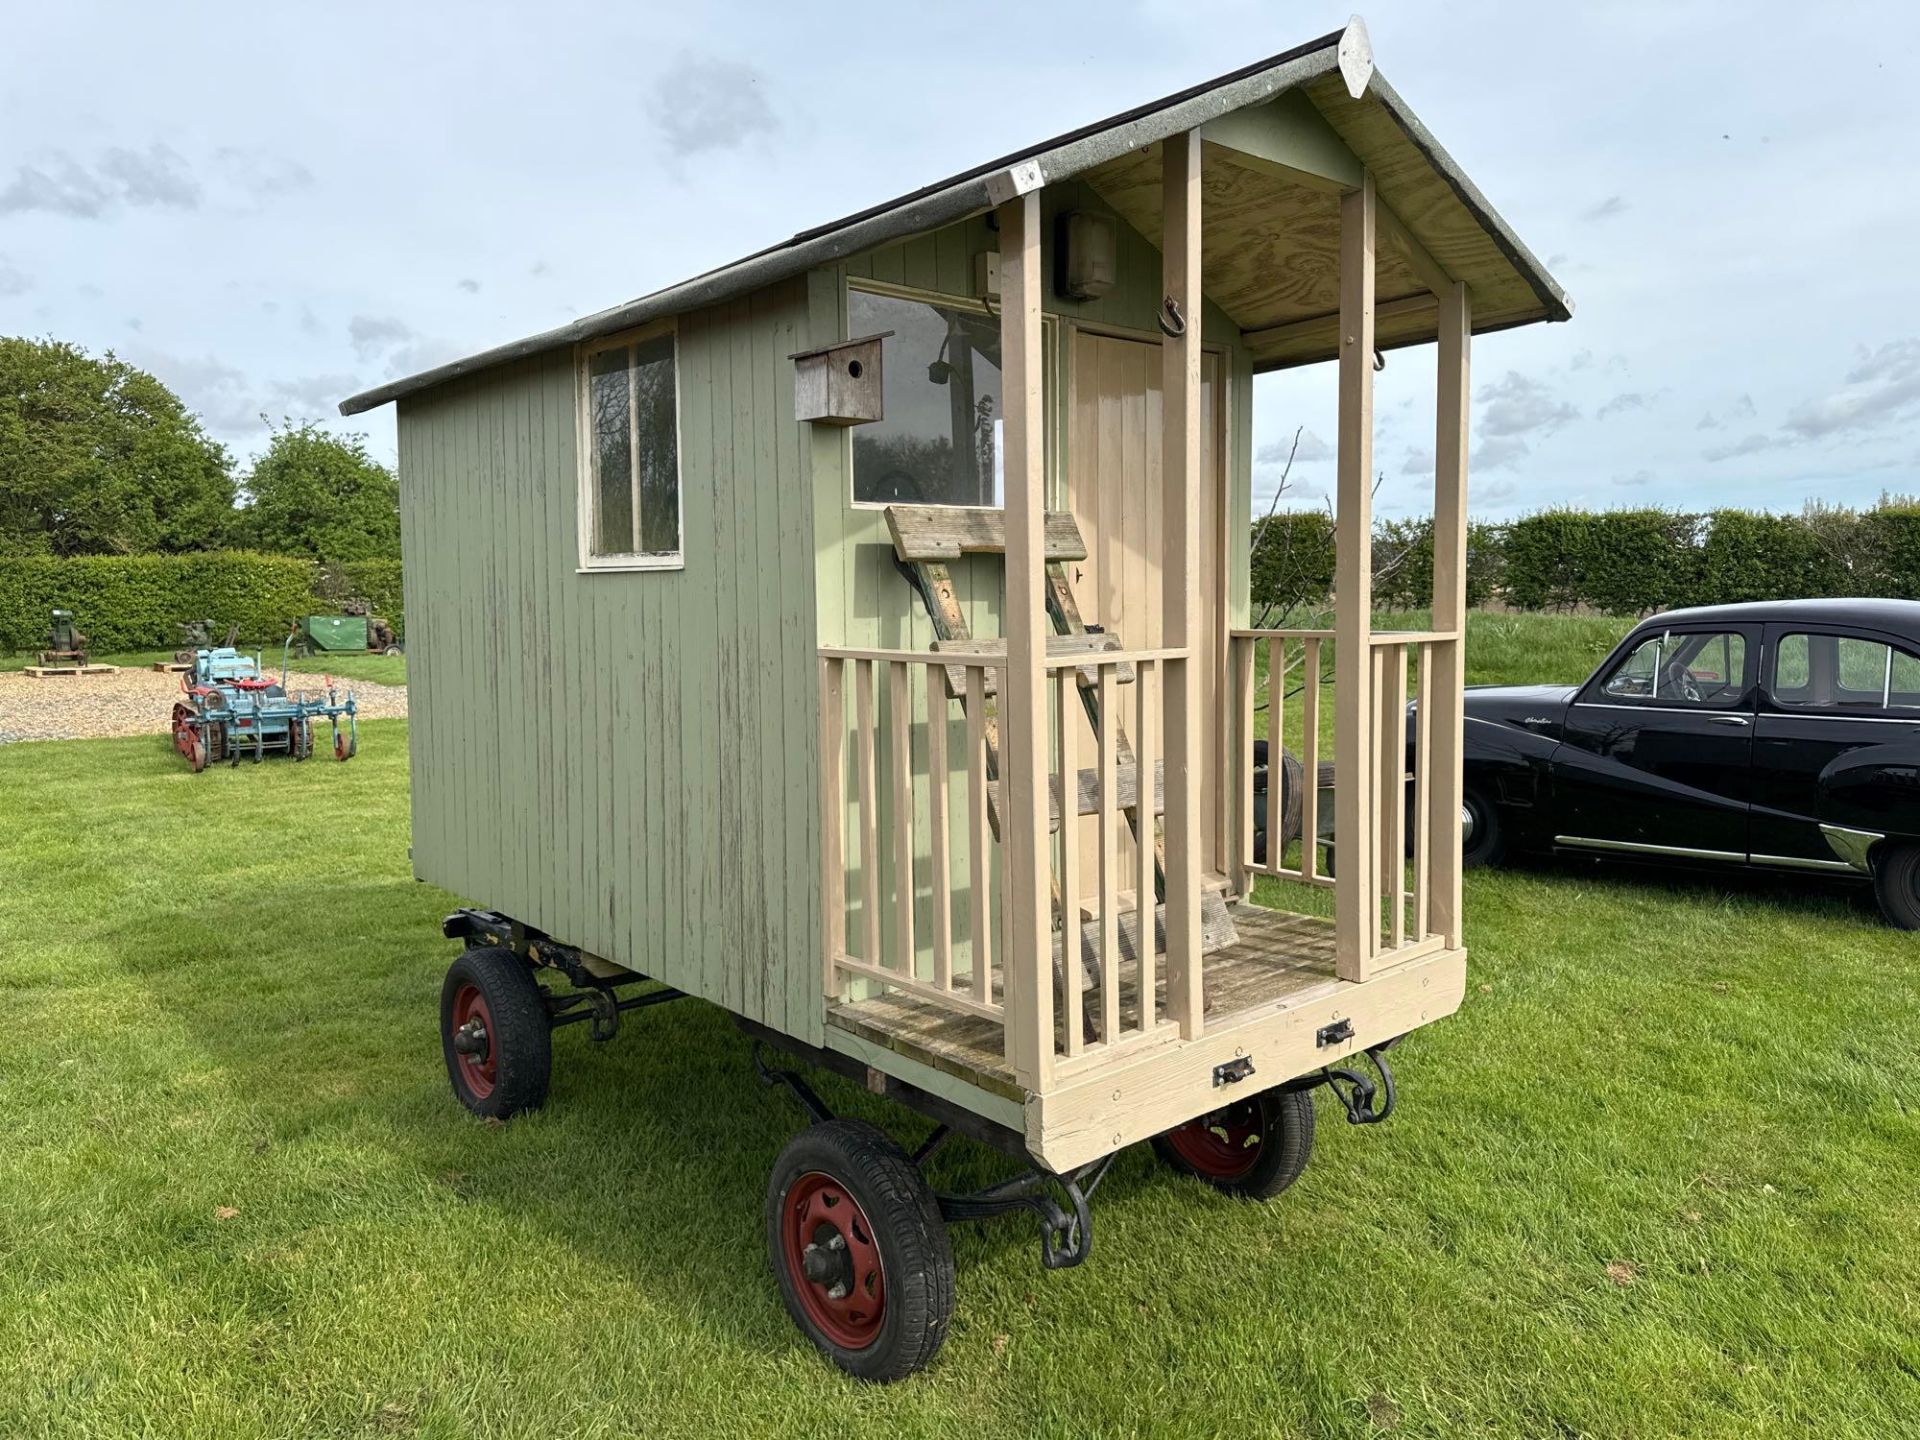 Shephards/garden wooden hut 10' x 4'6" on 4 wheel trailer - Bild 2 aus 3